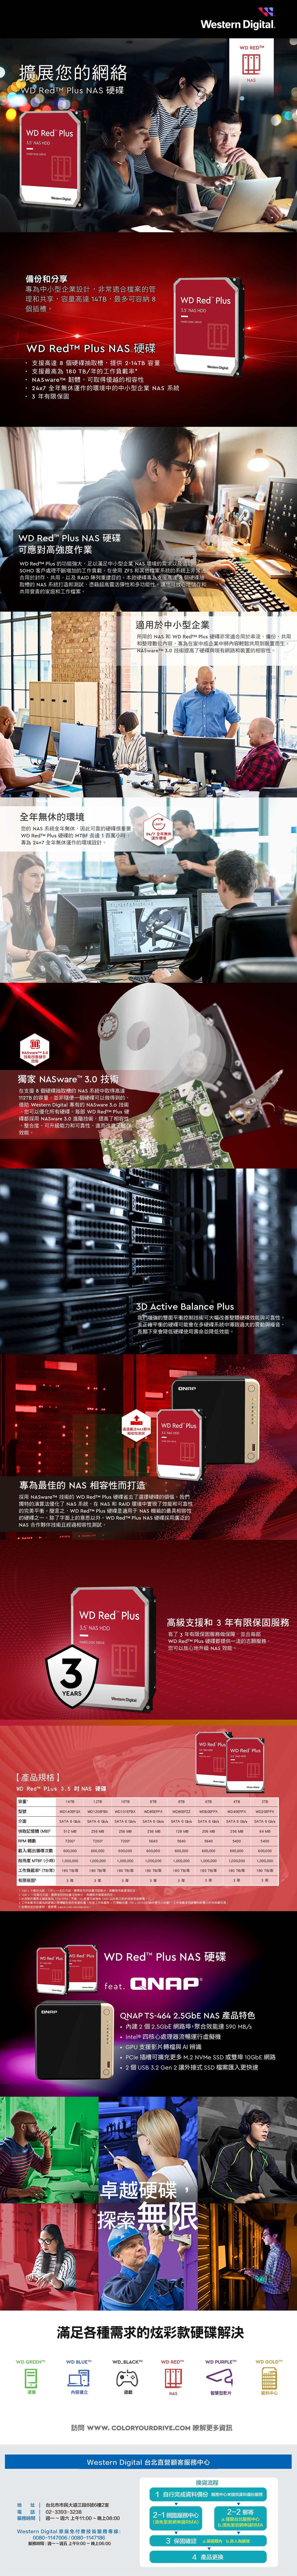 擴展您的網絡 Redt  NAS 硬碟 Red  3 NAS HDD   Dgital備份和分享專為中小型企業設計,非常適合檔案的管理和共享,容量高達 4TB,最多可容納 8個插 Red  NAS 硬碟支援高達 8 個硬碟抽取槽,提供-14TB 容量支援最高為 180TB的工作負載率* NASware 韌體,可取得優越的相容性24x7 全無休運作的環境中的中小型企業 NAS 系統3 有限保固 WD Red 3 NAS HDDHARD   WD Red  NAS 硬碟可應對高強度作業WD  Plus 的功能強大,足以滿足中小型企業 NAS 環境的需求以及協助SHO 客戶處理不斷增加的工作負載,在使用 ZFS 和其他檔案系統的系統上非常適合用於封存、共用,以及 RAID 陣列重建目的。本款硬碟專為支援高達 8 個硬碟抽取槽的 NAS 系統打造和測試,憑藉超高靈活彈性和多功能性,讓您可放心儲存和共用寶貴的家庭和工作檔案。全無休的環境WD REDMNAS適用於中小型企業所用的 NAS 和 WD  Plus 硬碟非常適合用於串流、備份、共用和整理數位內容,專為在家中或企業中將內容輕鬆共用到裝置而生。NASwareTM 30技術提高了硬碟與現有網路和裝置的相容性。-247-您的 NAS 系統全無休,因此可靠的硬碟很重要。WD  Plus 硬碟的 MTBF長達1百萬小時,專為247全年無休運作的環境設計。247 全年無休運作環境NASwareTM 3.0技術改善儲存效能獨家 NASware 3.0 技術在支援8個硬碟抽取槽的 NAS 系統中取得高達112TB 的容量,並非隨便一個硬碟可以做得到的借助 Western  專有的 NASware 3.o 技術您可以優化所有硬碟。每部 WD Redt Plus 硬碟都採用 NASware 3.0 進階技術,提高了相容性整合度、可升級能力和可靠性,進而改進了儲存效能。. M-TFJ2 1328 3D Active Balance Plus我們增強的雙面平衡控制技術可大幅改善整體硬碟效能與可靠性。未正確平衡的硬碟可能會在多硬碟系統中導致過大的震動與噪音、長期下來會降低硬碟使用壽命並降低效能。QNAPWD Red Plus通過廣泛NAS夥伴相容性測試 NAS HDDHARD DISK DRIVEWestern Digital專為最佳的 NAS 相容性而打造O採用 NASwareTM 技術的 WD  Plus 硬碟省去了選擇硬碟的煩惱。我們獨特的演算法優化了 NAS 系統,在NAS 和 RAID 環境中實現了效能和可靠性的完美平衡。簡言之,WD  Plus 硬碟是適用于NAS 機箱的最具相容性的硬碟之一。除了字面上的意思以外。WD  Plus NAS 硬碟採用廣泛的NAS 合作夥伴技術且經過相容性測試。i.2 TMWD Red TM Plus NAS HDDHARD DISK DRIVE高級支援和 3 年有限保固服務有了3 年有限保固服務做保障,並且每部WD  Plus 硬碟都提供一流的志願服務,您可以放心地升級NAS 效能。3YEARS【產品規格】WD Red Plus   NAS 硬碟容量型號Western Digital.WD Red Plus3.5 NAS HDDWD Red Plus3.5 NAS HDDHARD DISK DRIVEWestern DigitalWestern Digital14TB12TB10TB8TB8TB6TB4TBWD120EFBX WD101EFBXWD80EFPXWD80EFZZWD60EFPXWD40EFPXWD140EFGXSATA 6Gb/s SATA 6Gb/s SATA 6Gb/sSATA 6Gb/s SATA 6Gb/s2TBWD20EFPXSATA 6Gb/s SATA 6Gb/s SATA 6Gb/s快取記憶體(MB)512 MB256MB256MB256MB128MB256MB256MB64 MBRPM 轉數720037200356405640564054005400載入/載出循環次數 600,000 耐用度 MTBF (小時) 1,000,000600,000600,000600,000600,000600,000600,000600,0001,000,0001,000,0001,000,0001,000,0001,000,0001,000,0001,000,000工作負載率(TB/年)180 TB/年180TB/年180 TB/年180TB/年180TB/年180TB/年180TB/年180 TB/年有限保固 53年3年3年3年3年3年3年3年1 1GB = 十億位元組,1TB=一元組。實際使用的容量可能較少,具體視作業環境而定。2 1MB = 一百萬位元組,實際使用的容量可能較少,具體視作業環境而定。3 此型號的實際主軸馬達為7200 RPM;不過,ID裝置可能報告 5400 以反映之前的效能等級標稱。4工作負載率定義為與硬碟之間的使用者資料量。年度工作負載率=傳輸容量(TB)x(8760/記錄的運作小時數)。工作負載率因硬體和軟體元件和架構而異。5 如需保固詳細資料,請參閱 support.wdc.com/warranty。WD Red PlusWD Red Plus NAS HDD3.5 NAS HDDHARD DISK DRIVEWestern DigitalWestern DigitalQNAPWD Red Plus NAS 硬碟feat. QNAP2QNAP TS-464 2.5GbE NAS 產品特色內建 2 個 2.5GbE 網路埠,聚合效能達 590 MB/sIntel® 四核心處理器流暢運行虛擬機GPU支援影片轉檔與AI 辨識PCle 插槽可擴充更多 M.2 NVMe SSD 或雙埠 10GbE 網路2 個 USB 3.2 Gen 2 讓外接式 SSD 檔案匯入更快速卓越硬碟,探索無限滿足各種需求的炫彩款硬碟解決WD GREENTWD BLUE™WD_BLACKTMWD RED™WD PURPLE™WD GOLD™運算內容建立遊戲NAS智慧型影片資料中心訪問 . COLORYOURDRIVE.COM 瞭解更多資訊Western Digital 台北直營顧客服務中心換貨流程地 址  台北市市民大道三段8號6樓2室02-3393-3238電話服務時間週一~ 週六 上午11:00~晚上08:00Western Digital 原廠免付費技術服務專線:0080-1147006/0080-1147186服務時間:週一~週五上午9:00~晚上06:001 自行完成資料備份服務中心未提供資料備份服務2-1 親臨服務中心(須先至官網申請RMA)2-2郵寄a.僅限台北服務中心b.須先至官網申請RMA3 保固確認 a.保固期內 b.非人為損壞4 產品更換